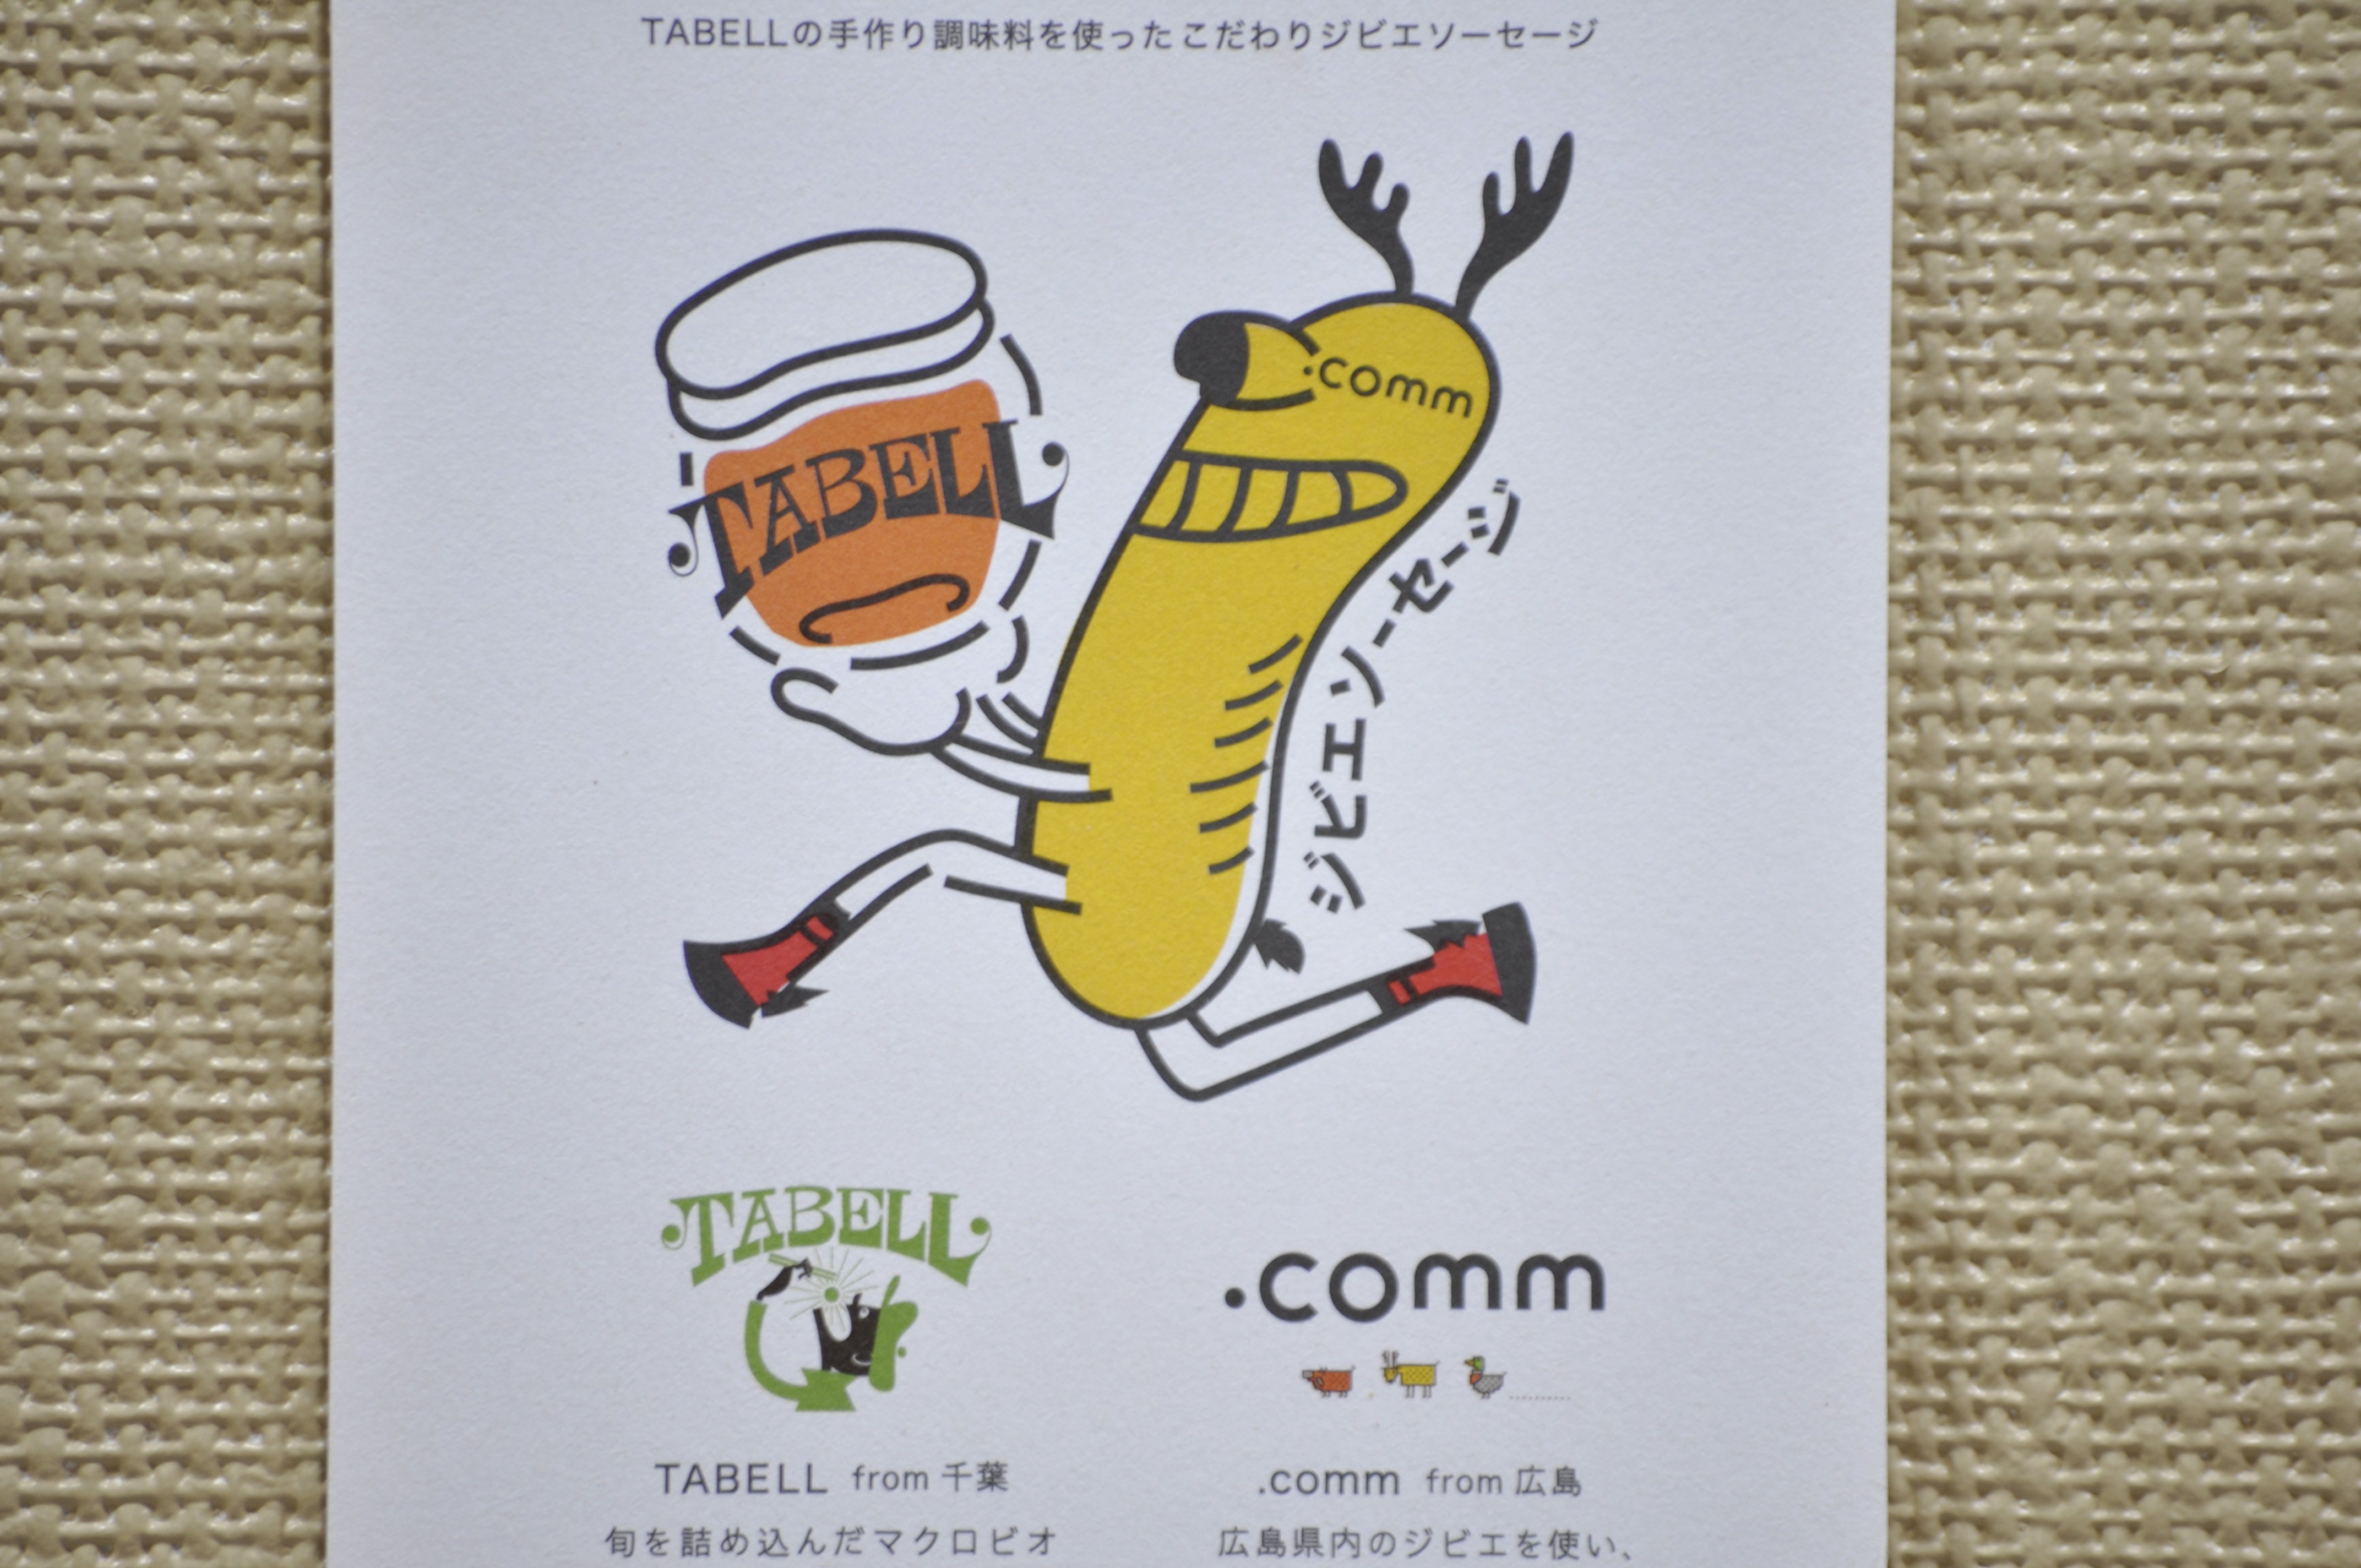 千葉県のマクロビキッチンカー「TABELL」とのコラボ